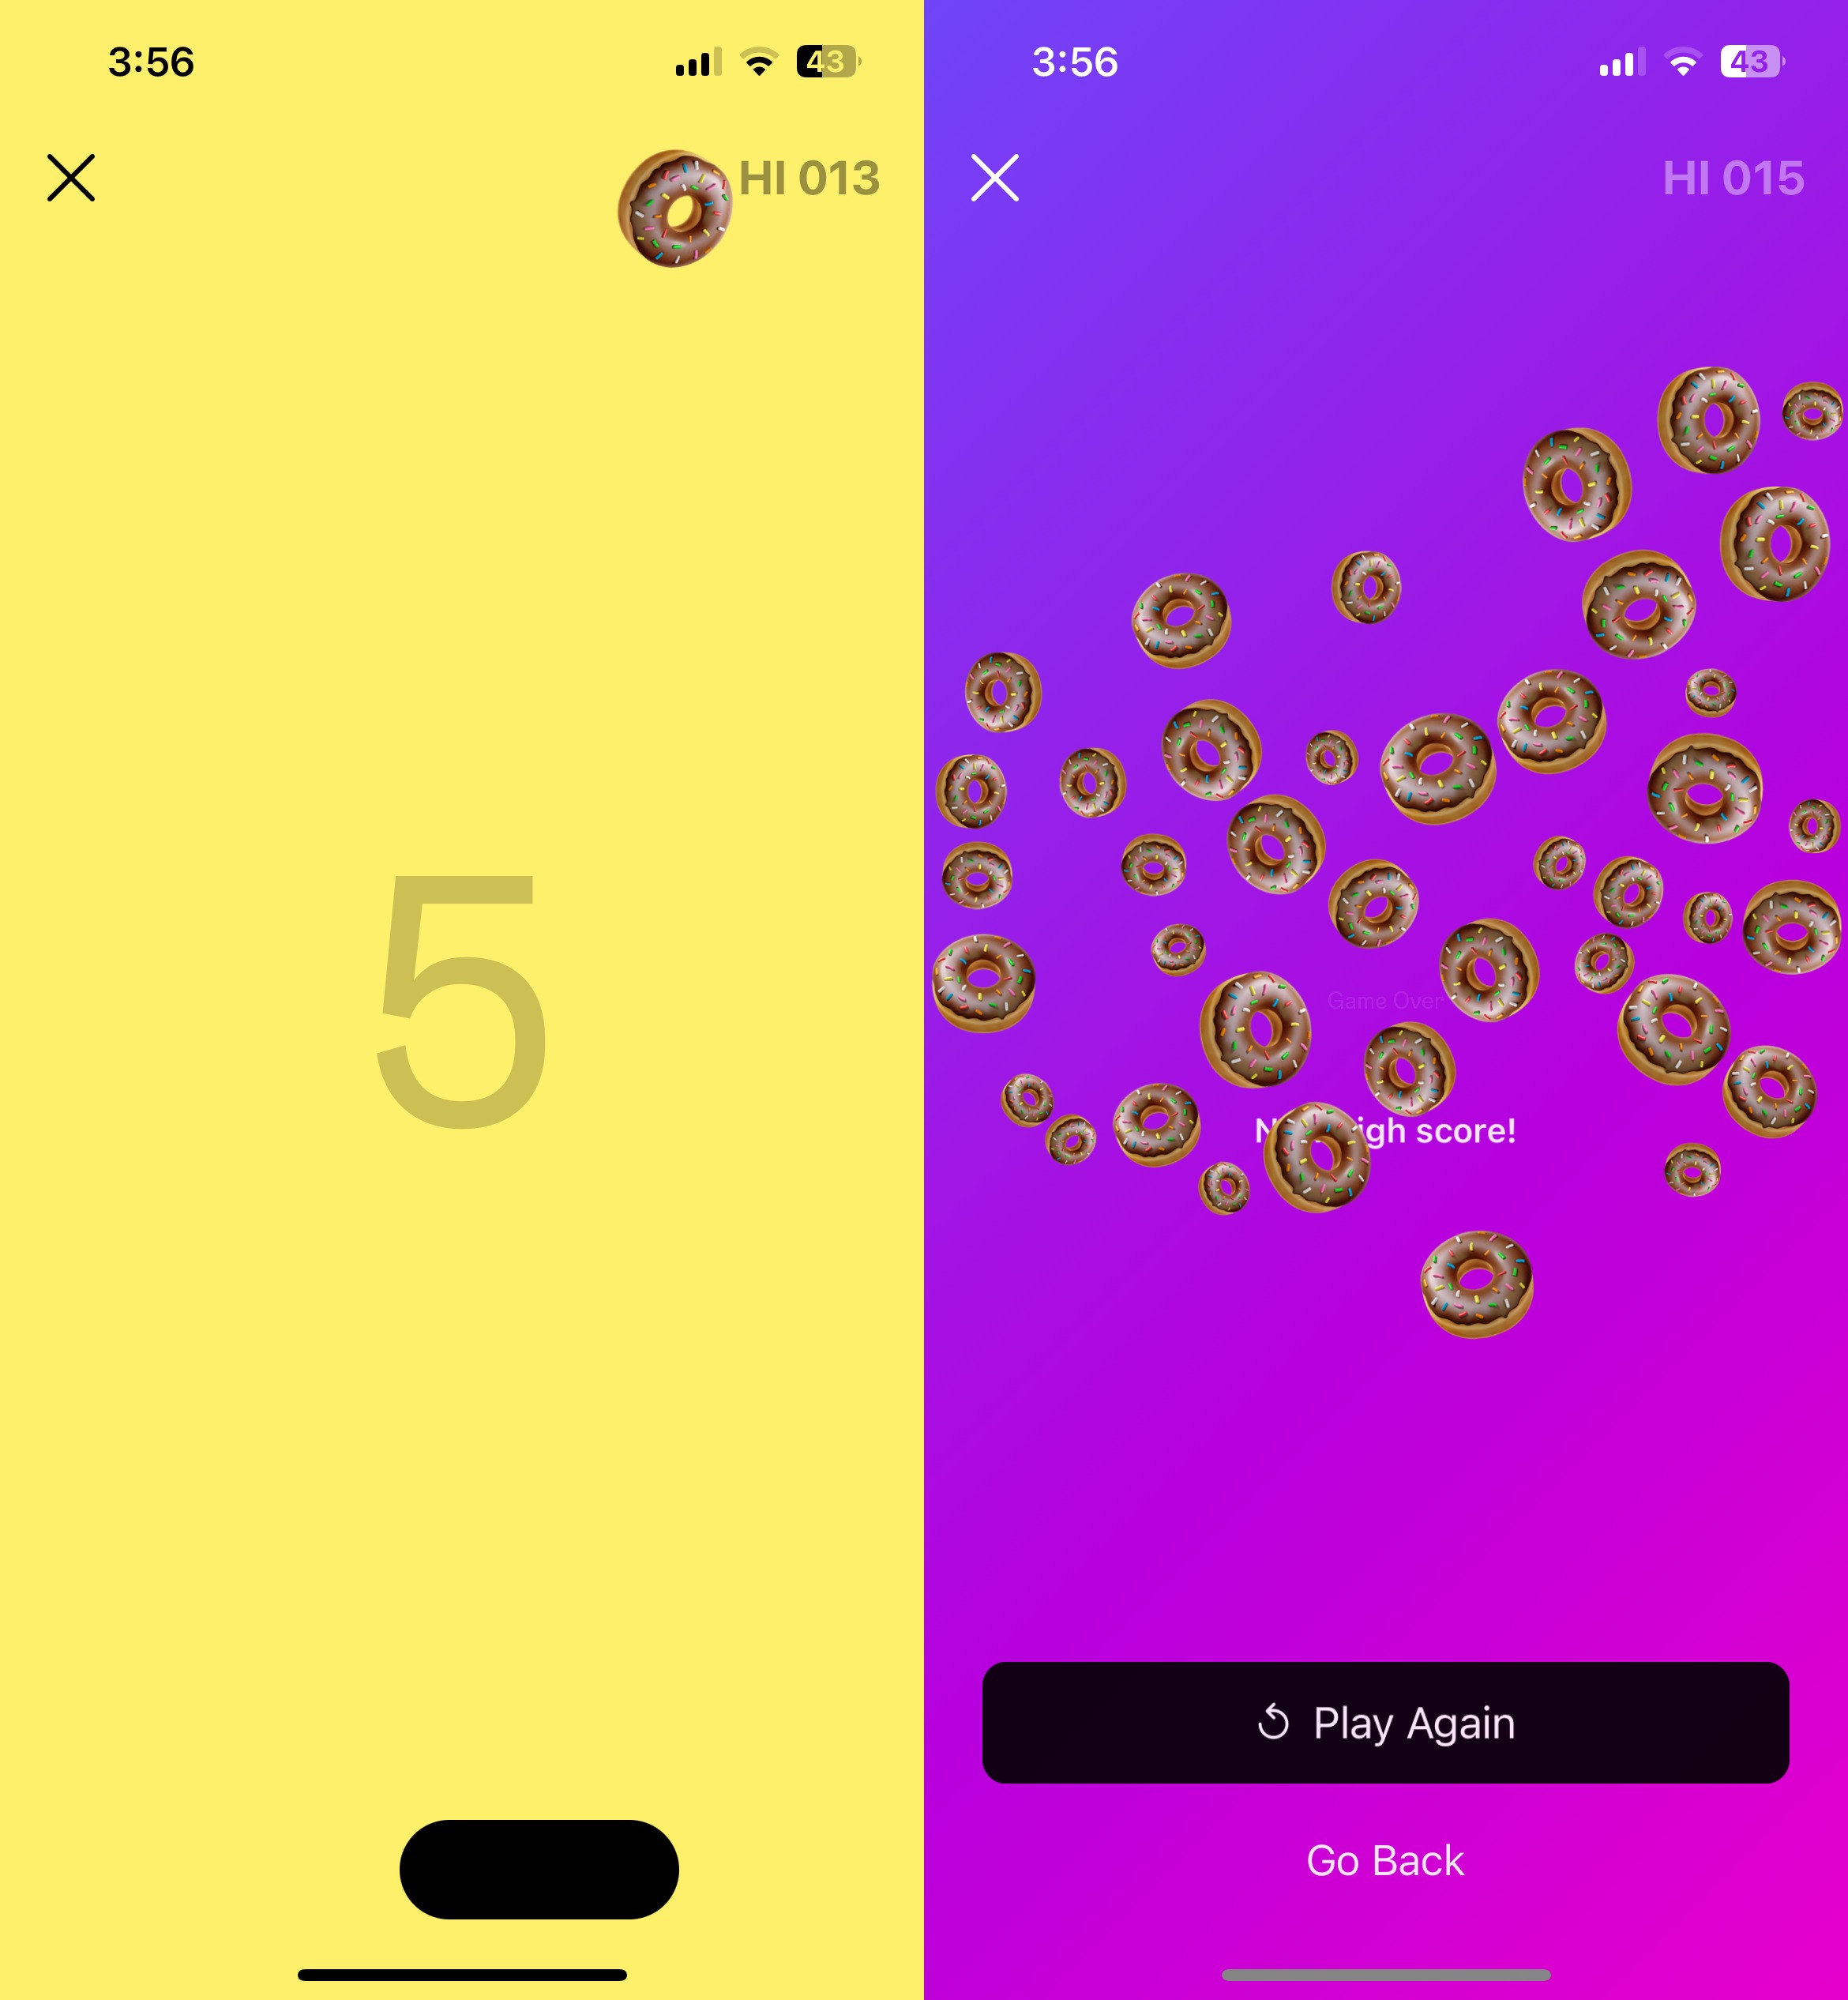 Instagram'ın gizli oyununun yan yana iki ekran görüntüsü.  İlk resimde kürekten seken bir çörek emojisi görülüyor.  İkinci resim oyunu ekran üzerinden gösteriyor.